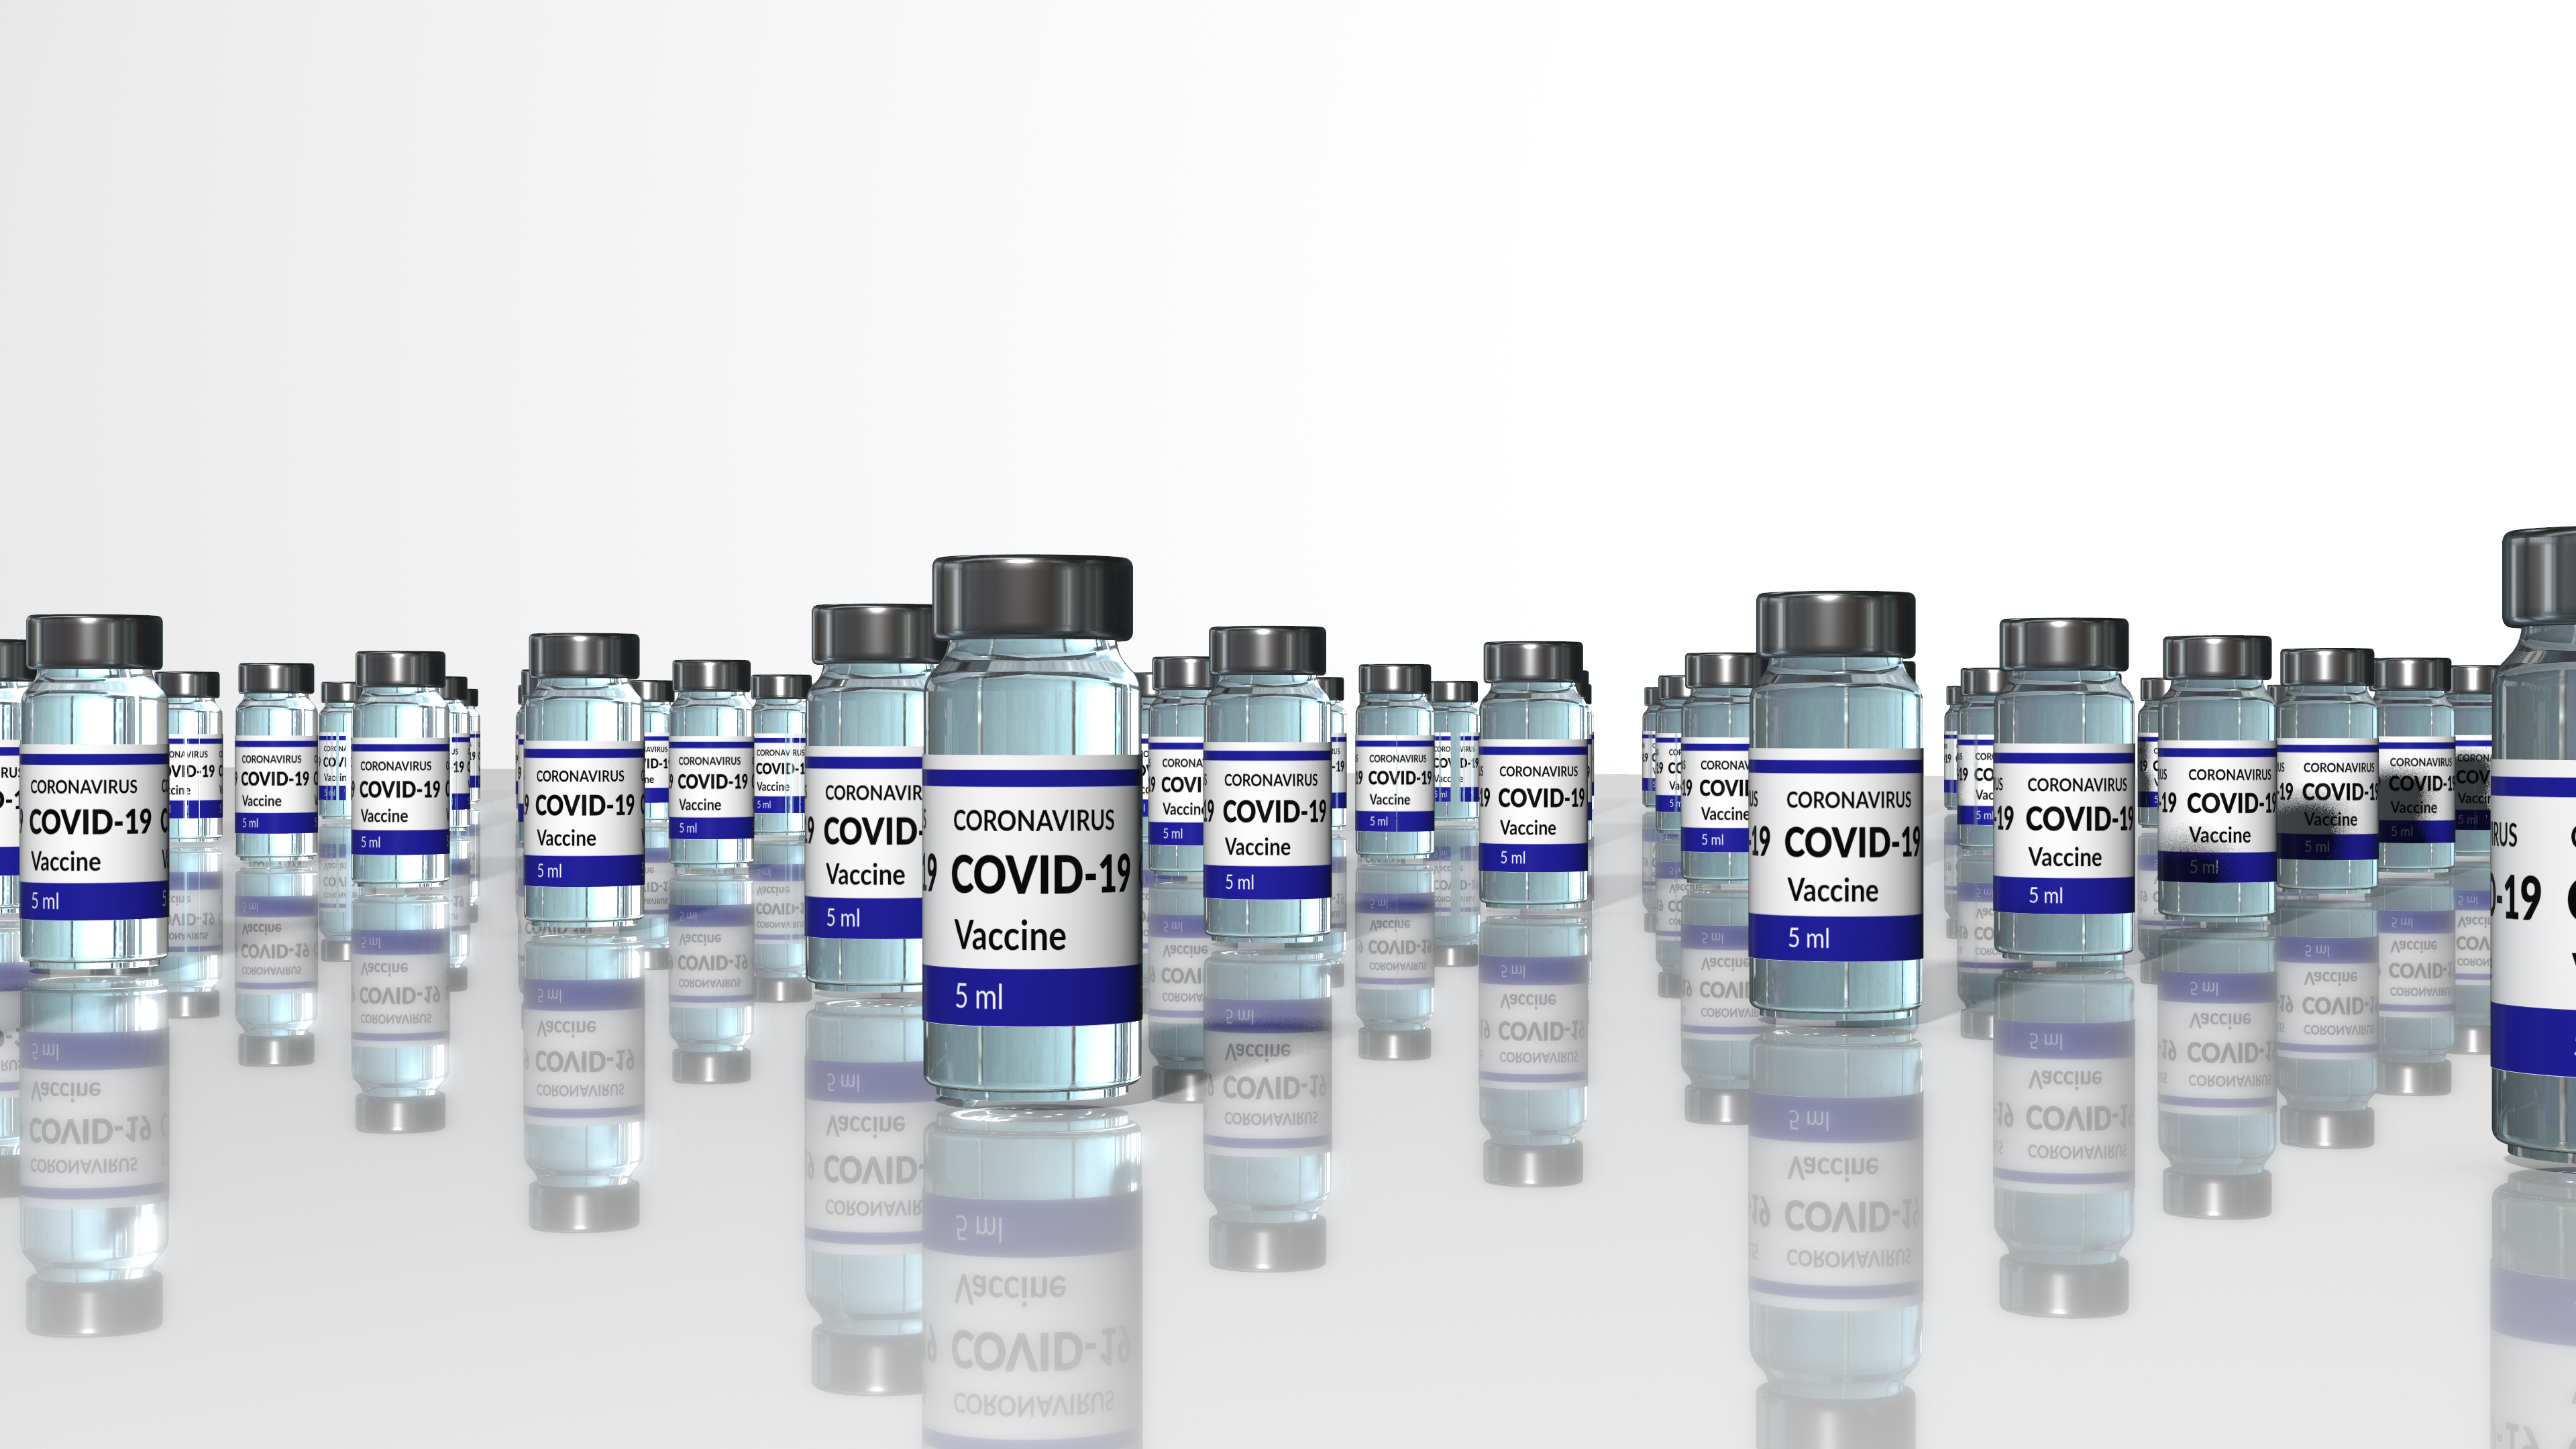 Covid-19 vaccine rollout, illustration